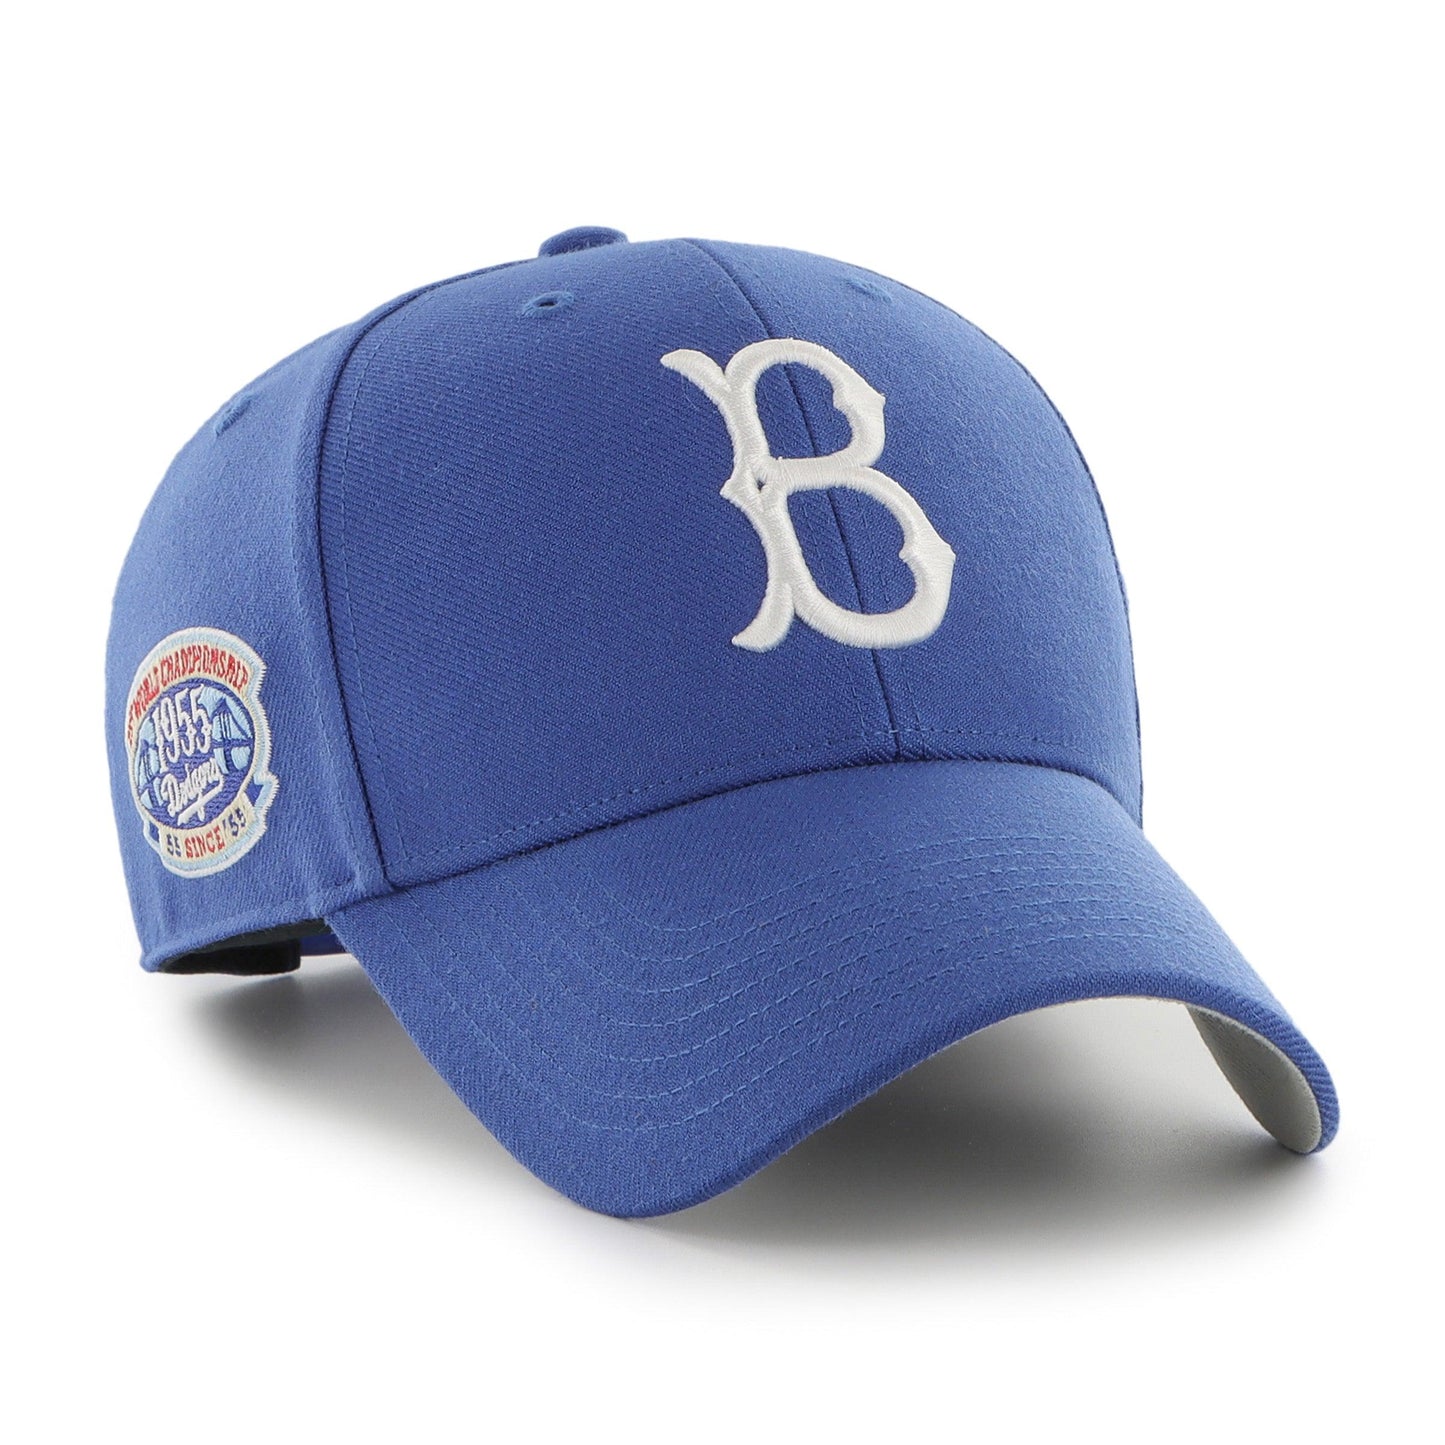  '47 Brand Snapback Cap - NO Shot Los Angeles Dodgers